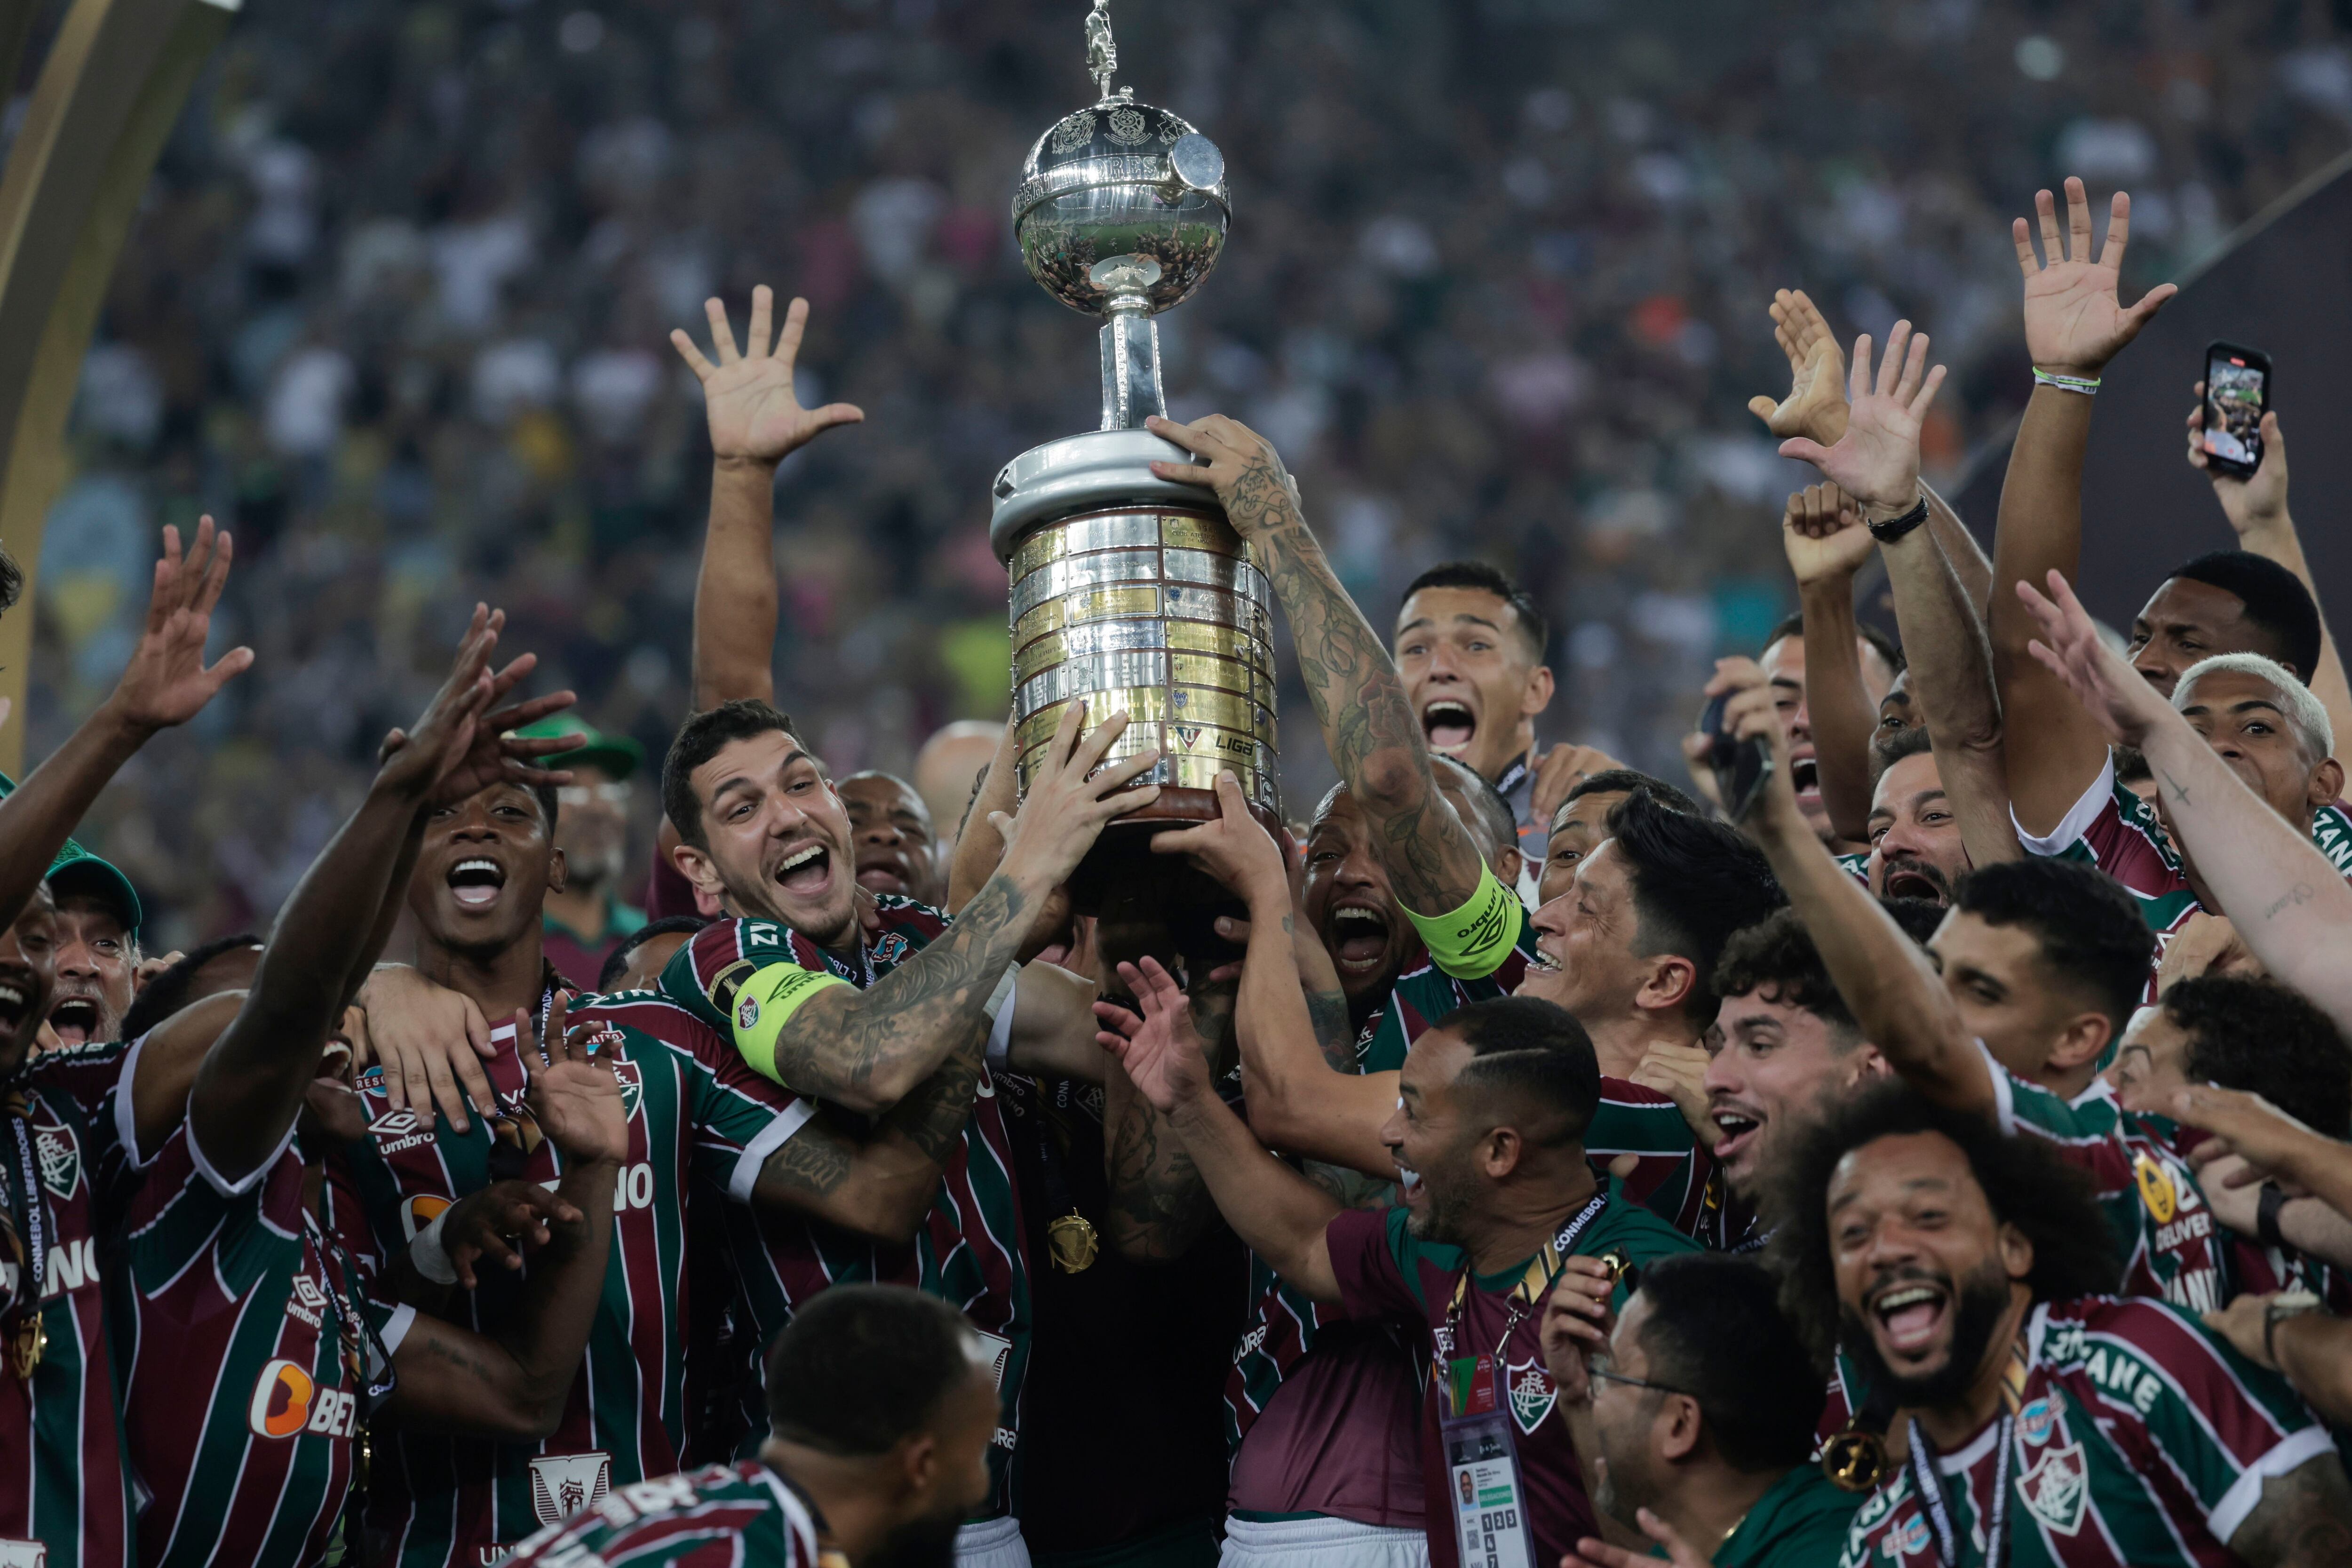 Fluminense integra el grupo de Alianza Lima en la Copa Libertadores e intentará repetir la hazaña este año. - créditos: EFE/Antonio Lacerda